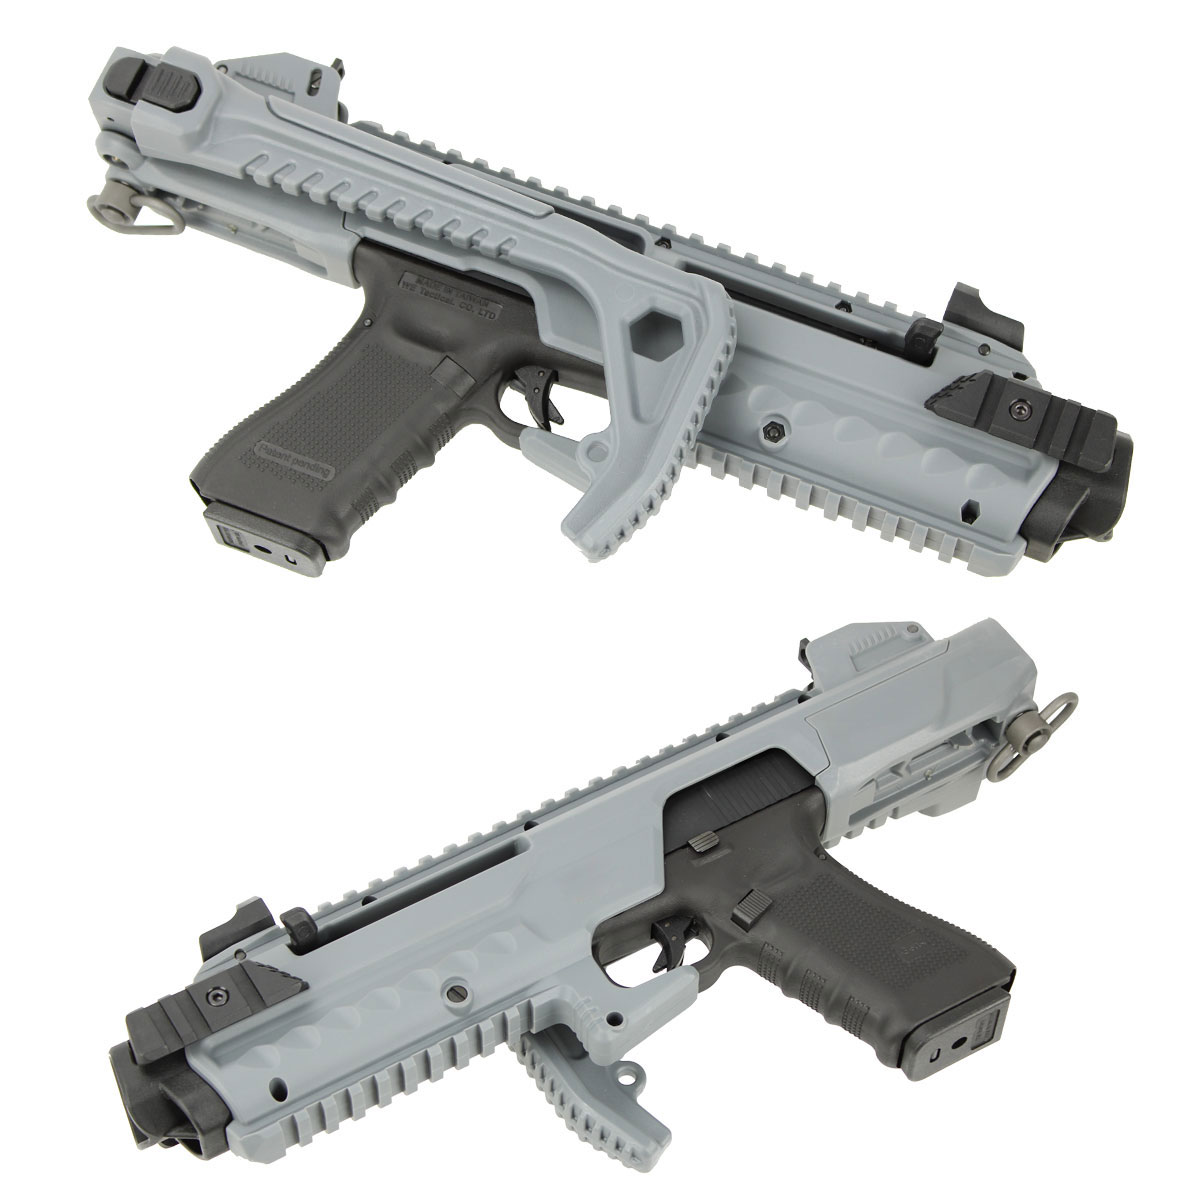 東京マルイ Glock17 gen4 カービンキットセット